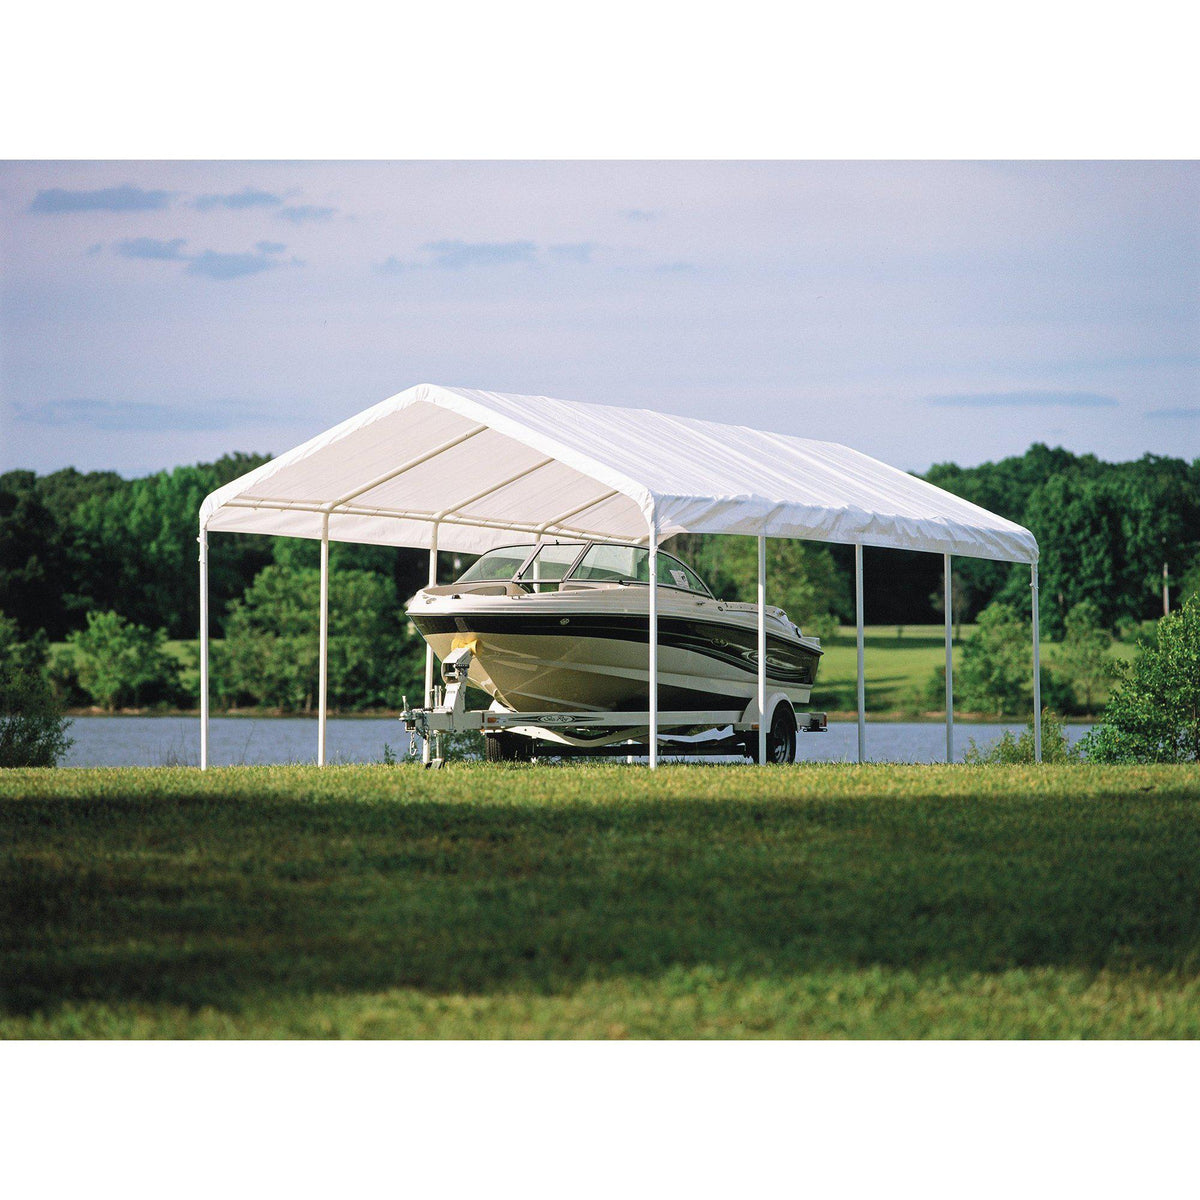 ShelterLogic SuperMax Canopy, White, 10 x 20 ft.